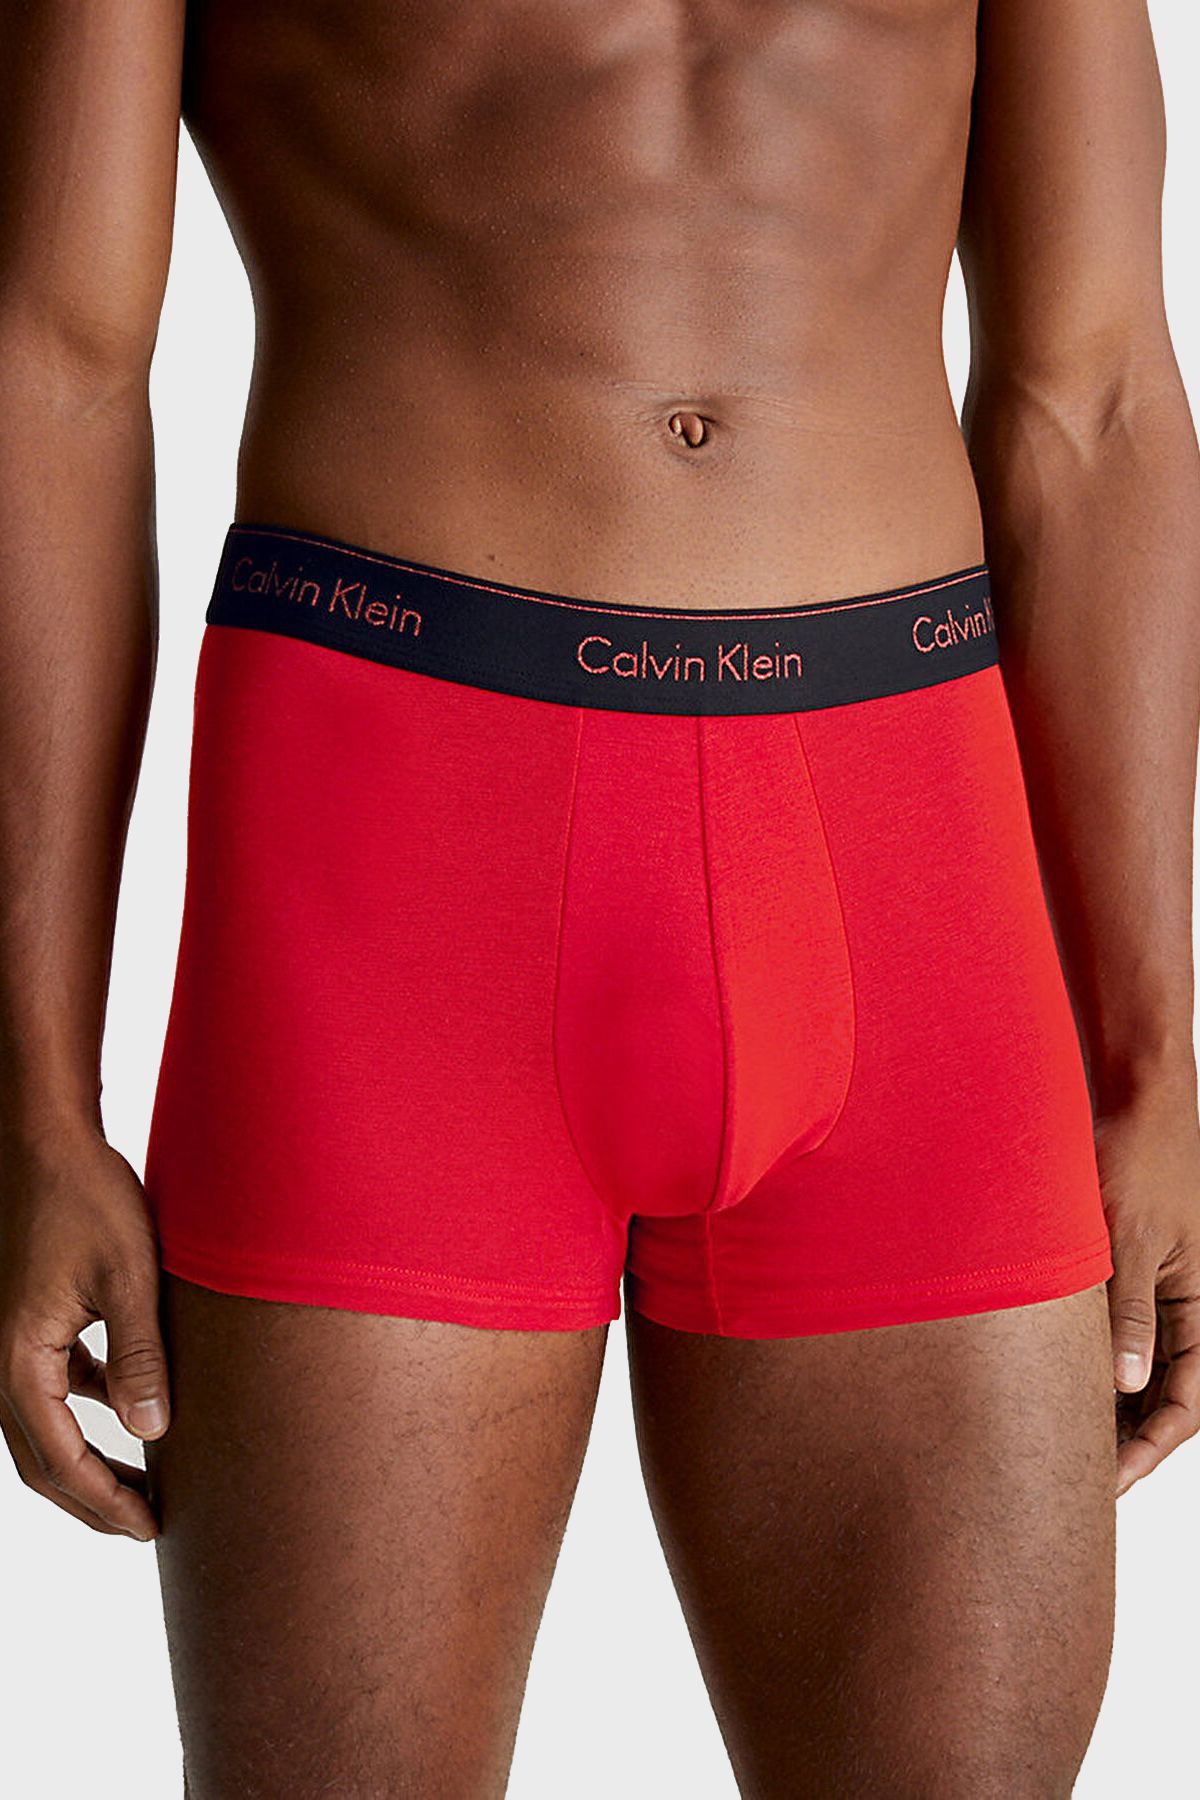 Calvin Klein Cotton Flexible 3 Pack Boxer 000NB3873AKHZ Men's BOXER  000NB3873A KHZ - Trendyol